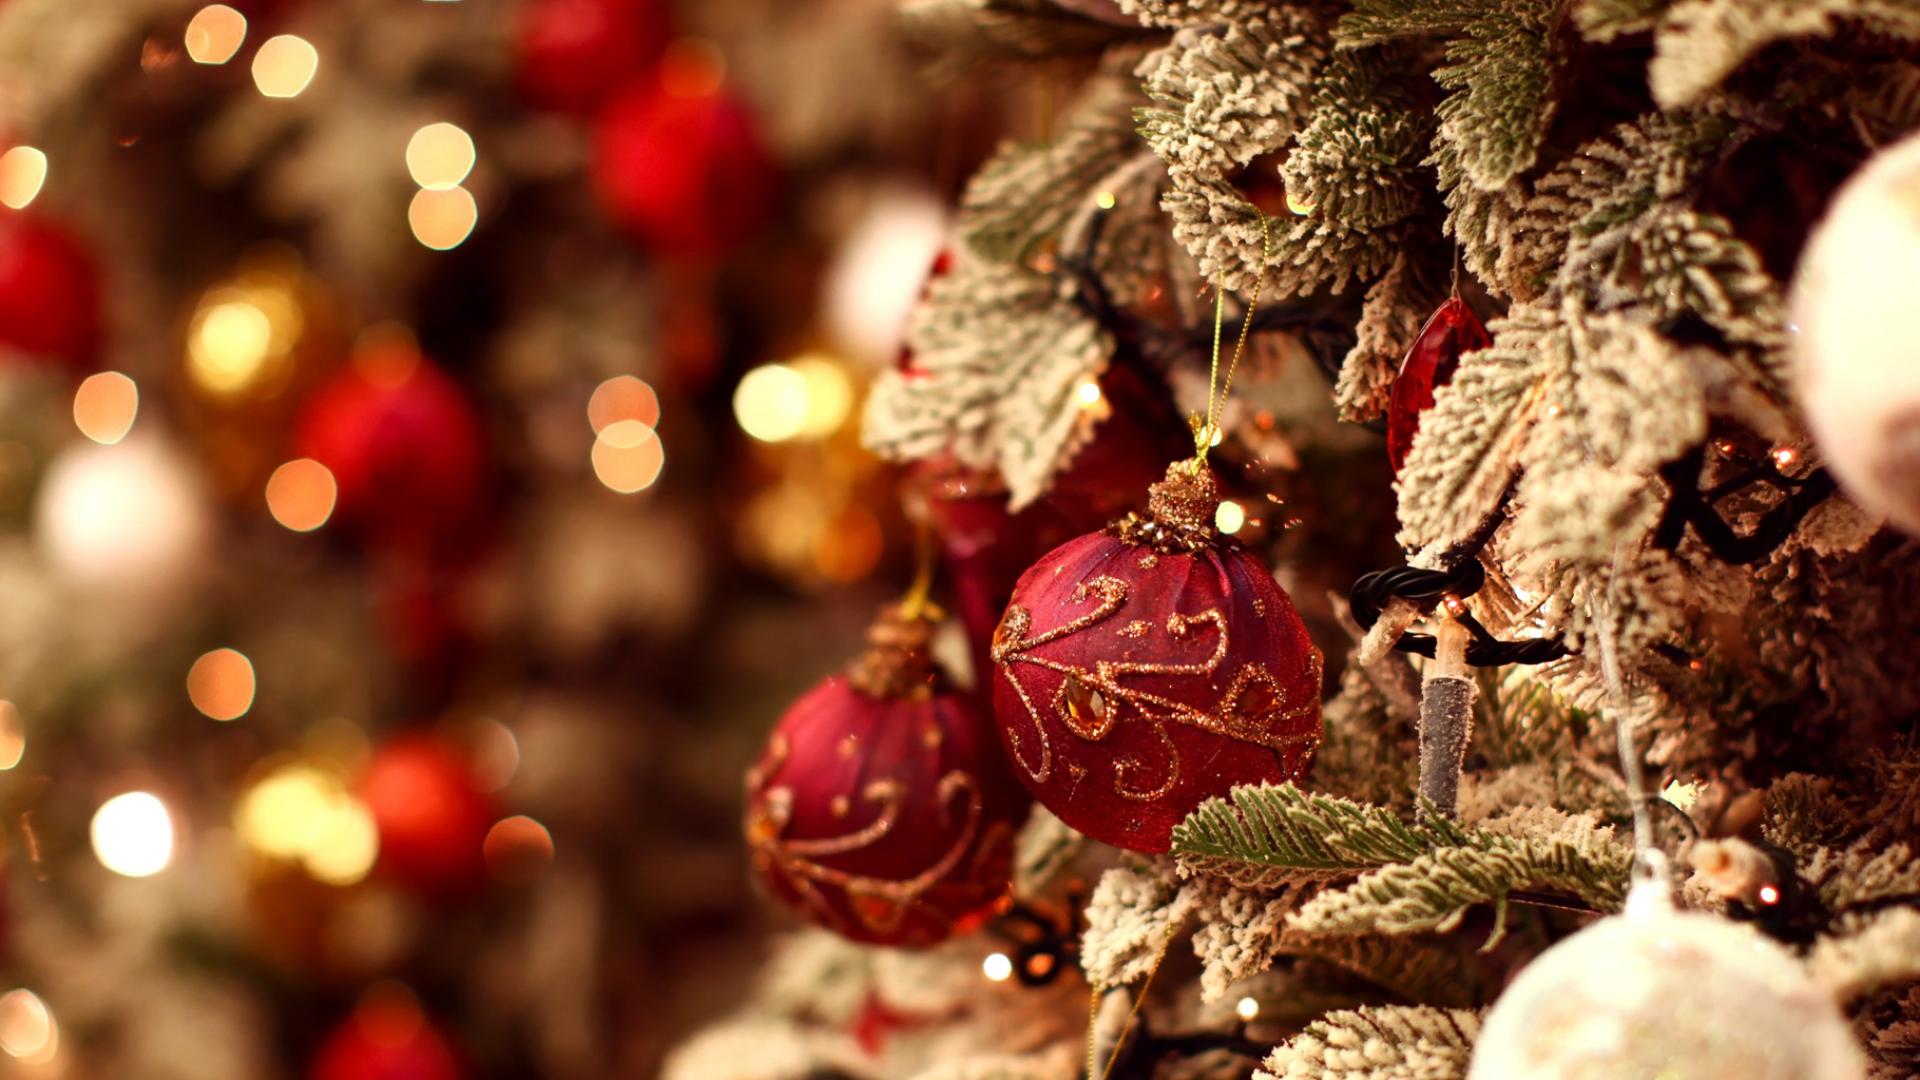 papel de navidad,decoración navideña,decoración navideña,árbol de navidad,navidad,tradicion